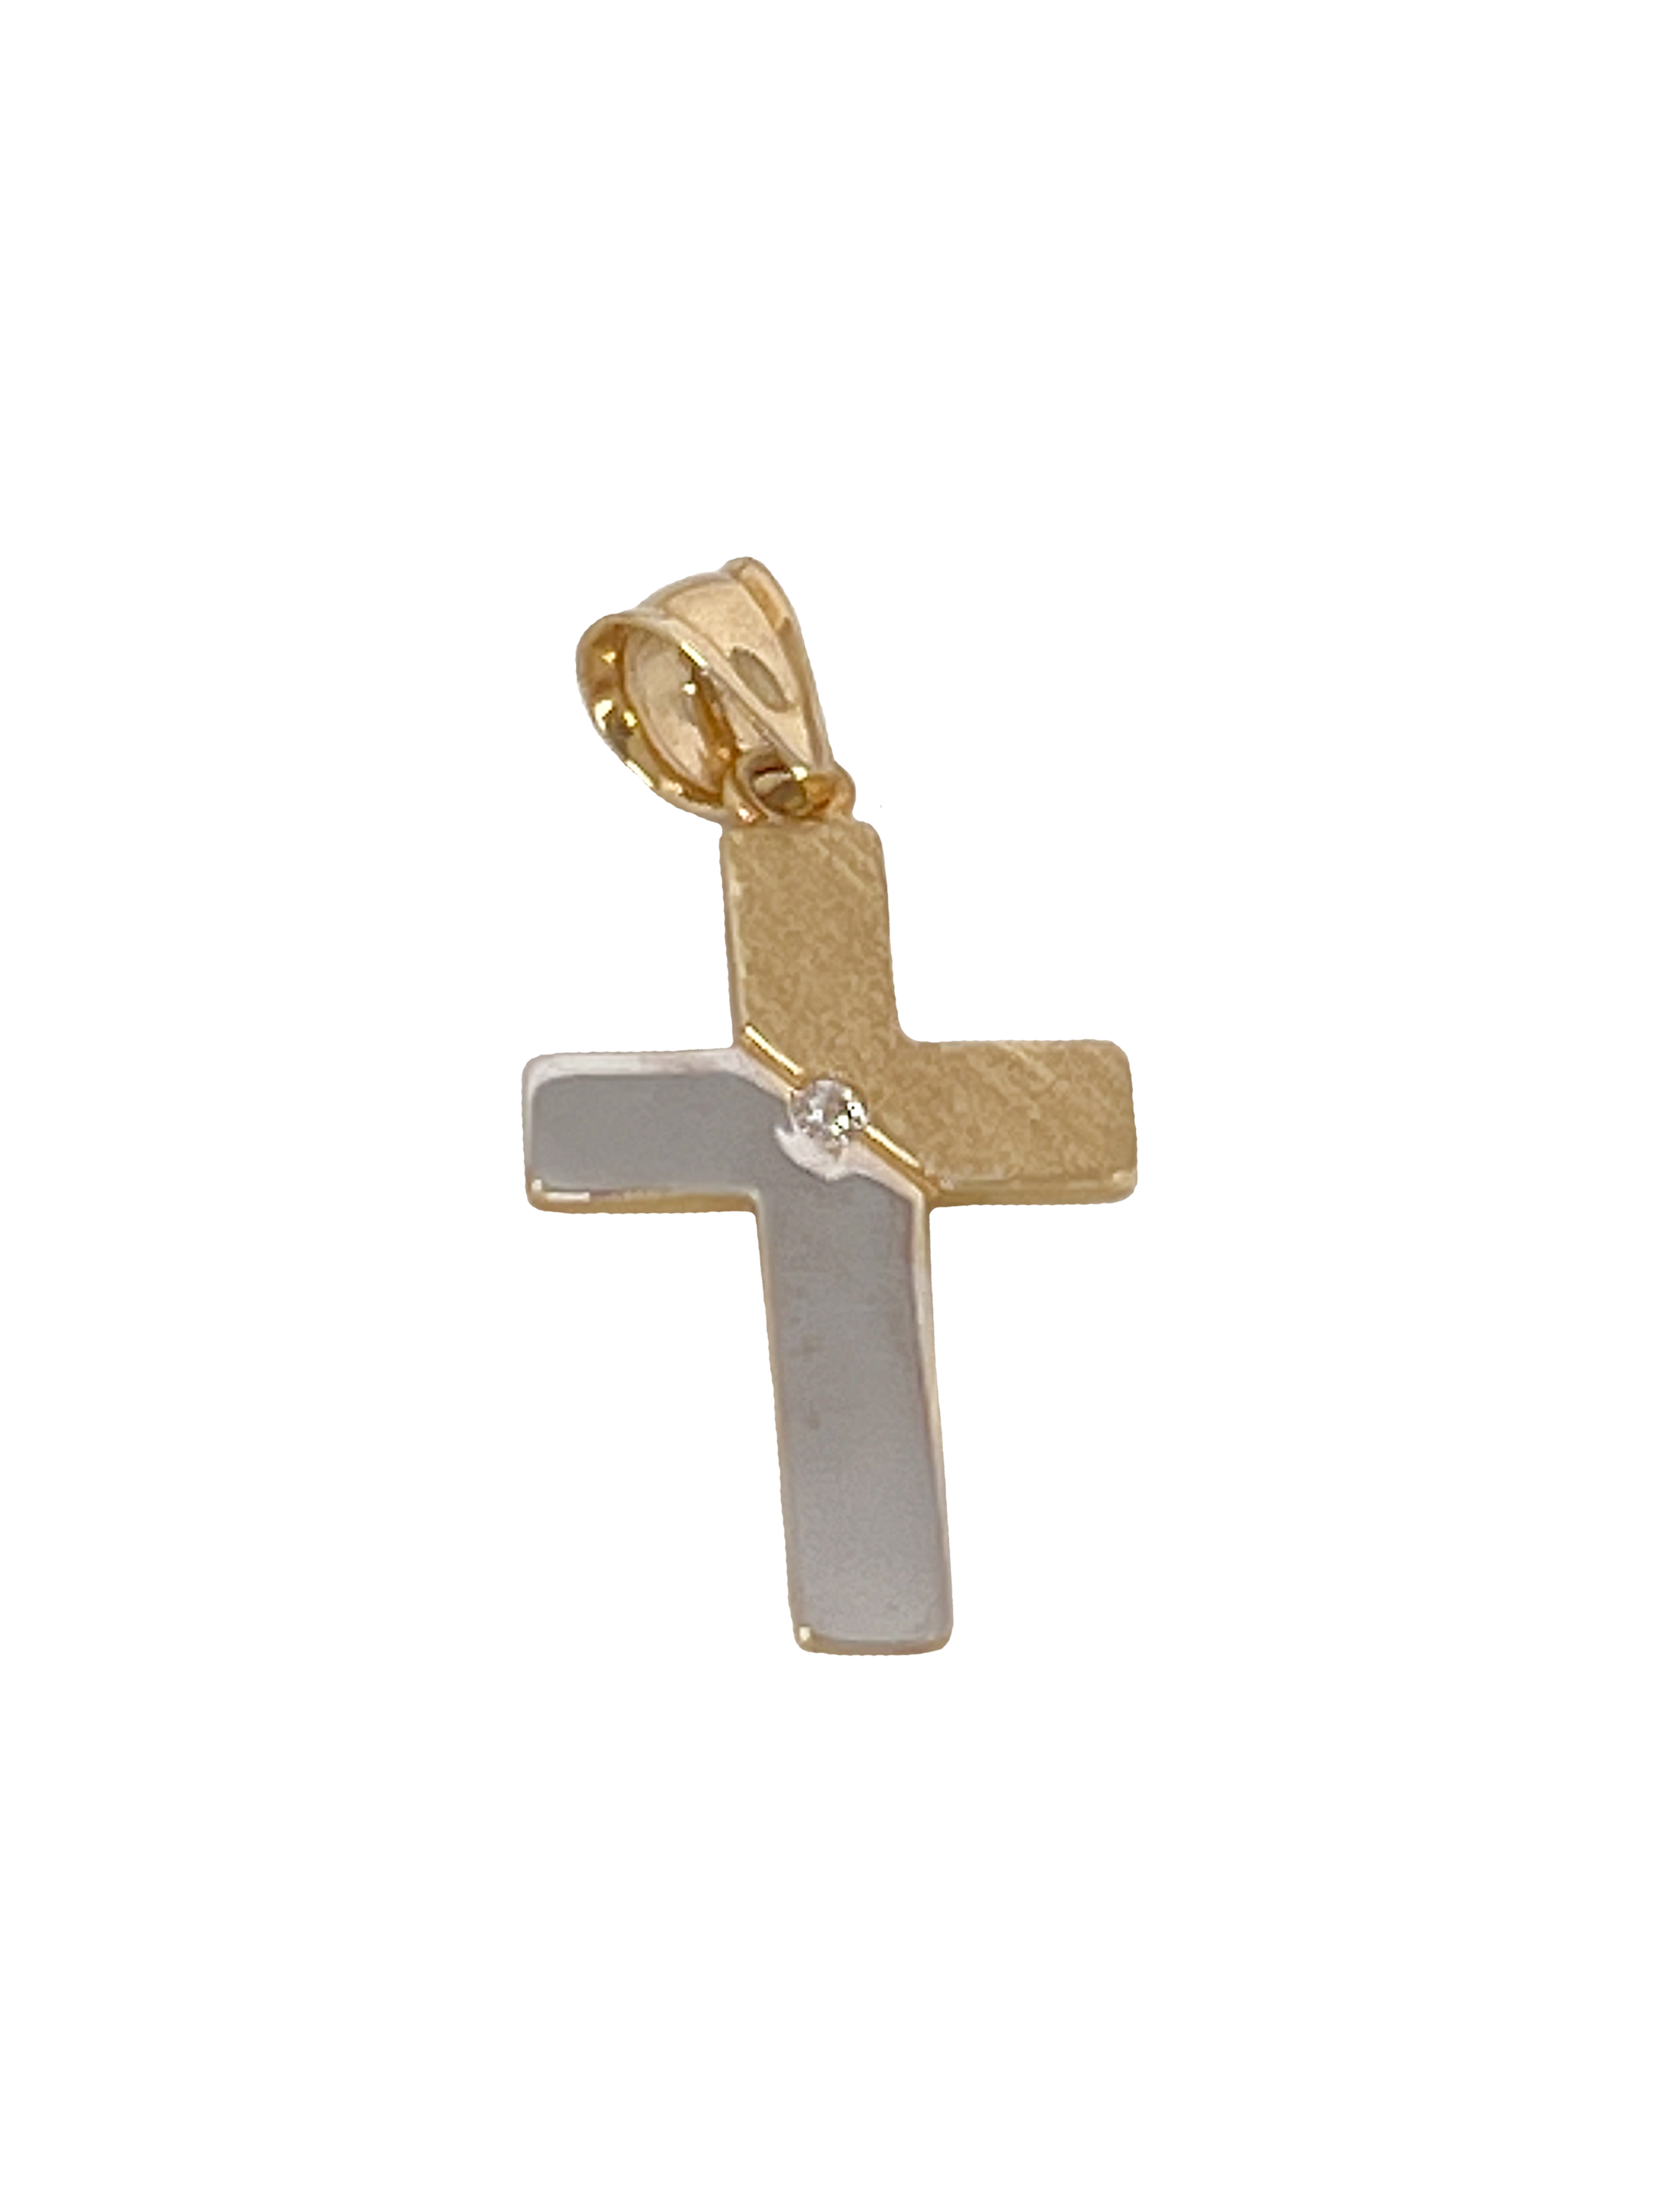 Cruz de oro realizada en oro combinado con zirconias